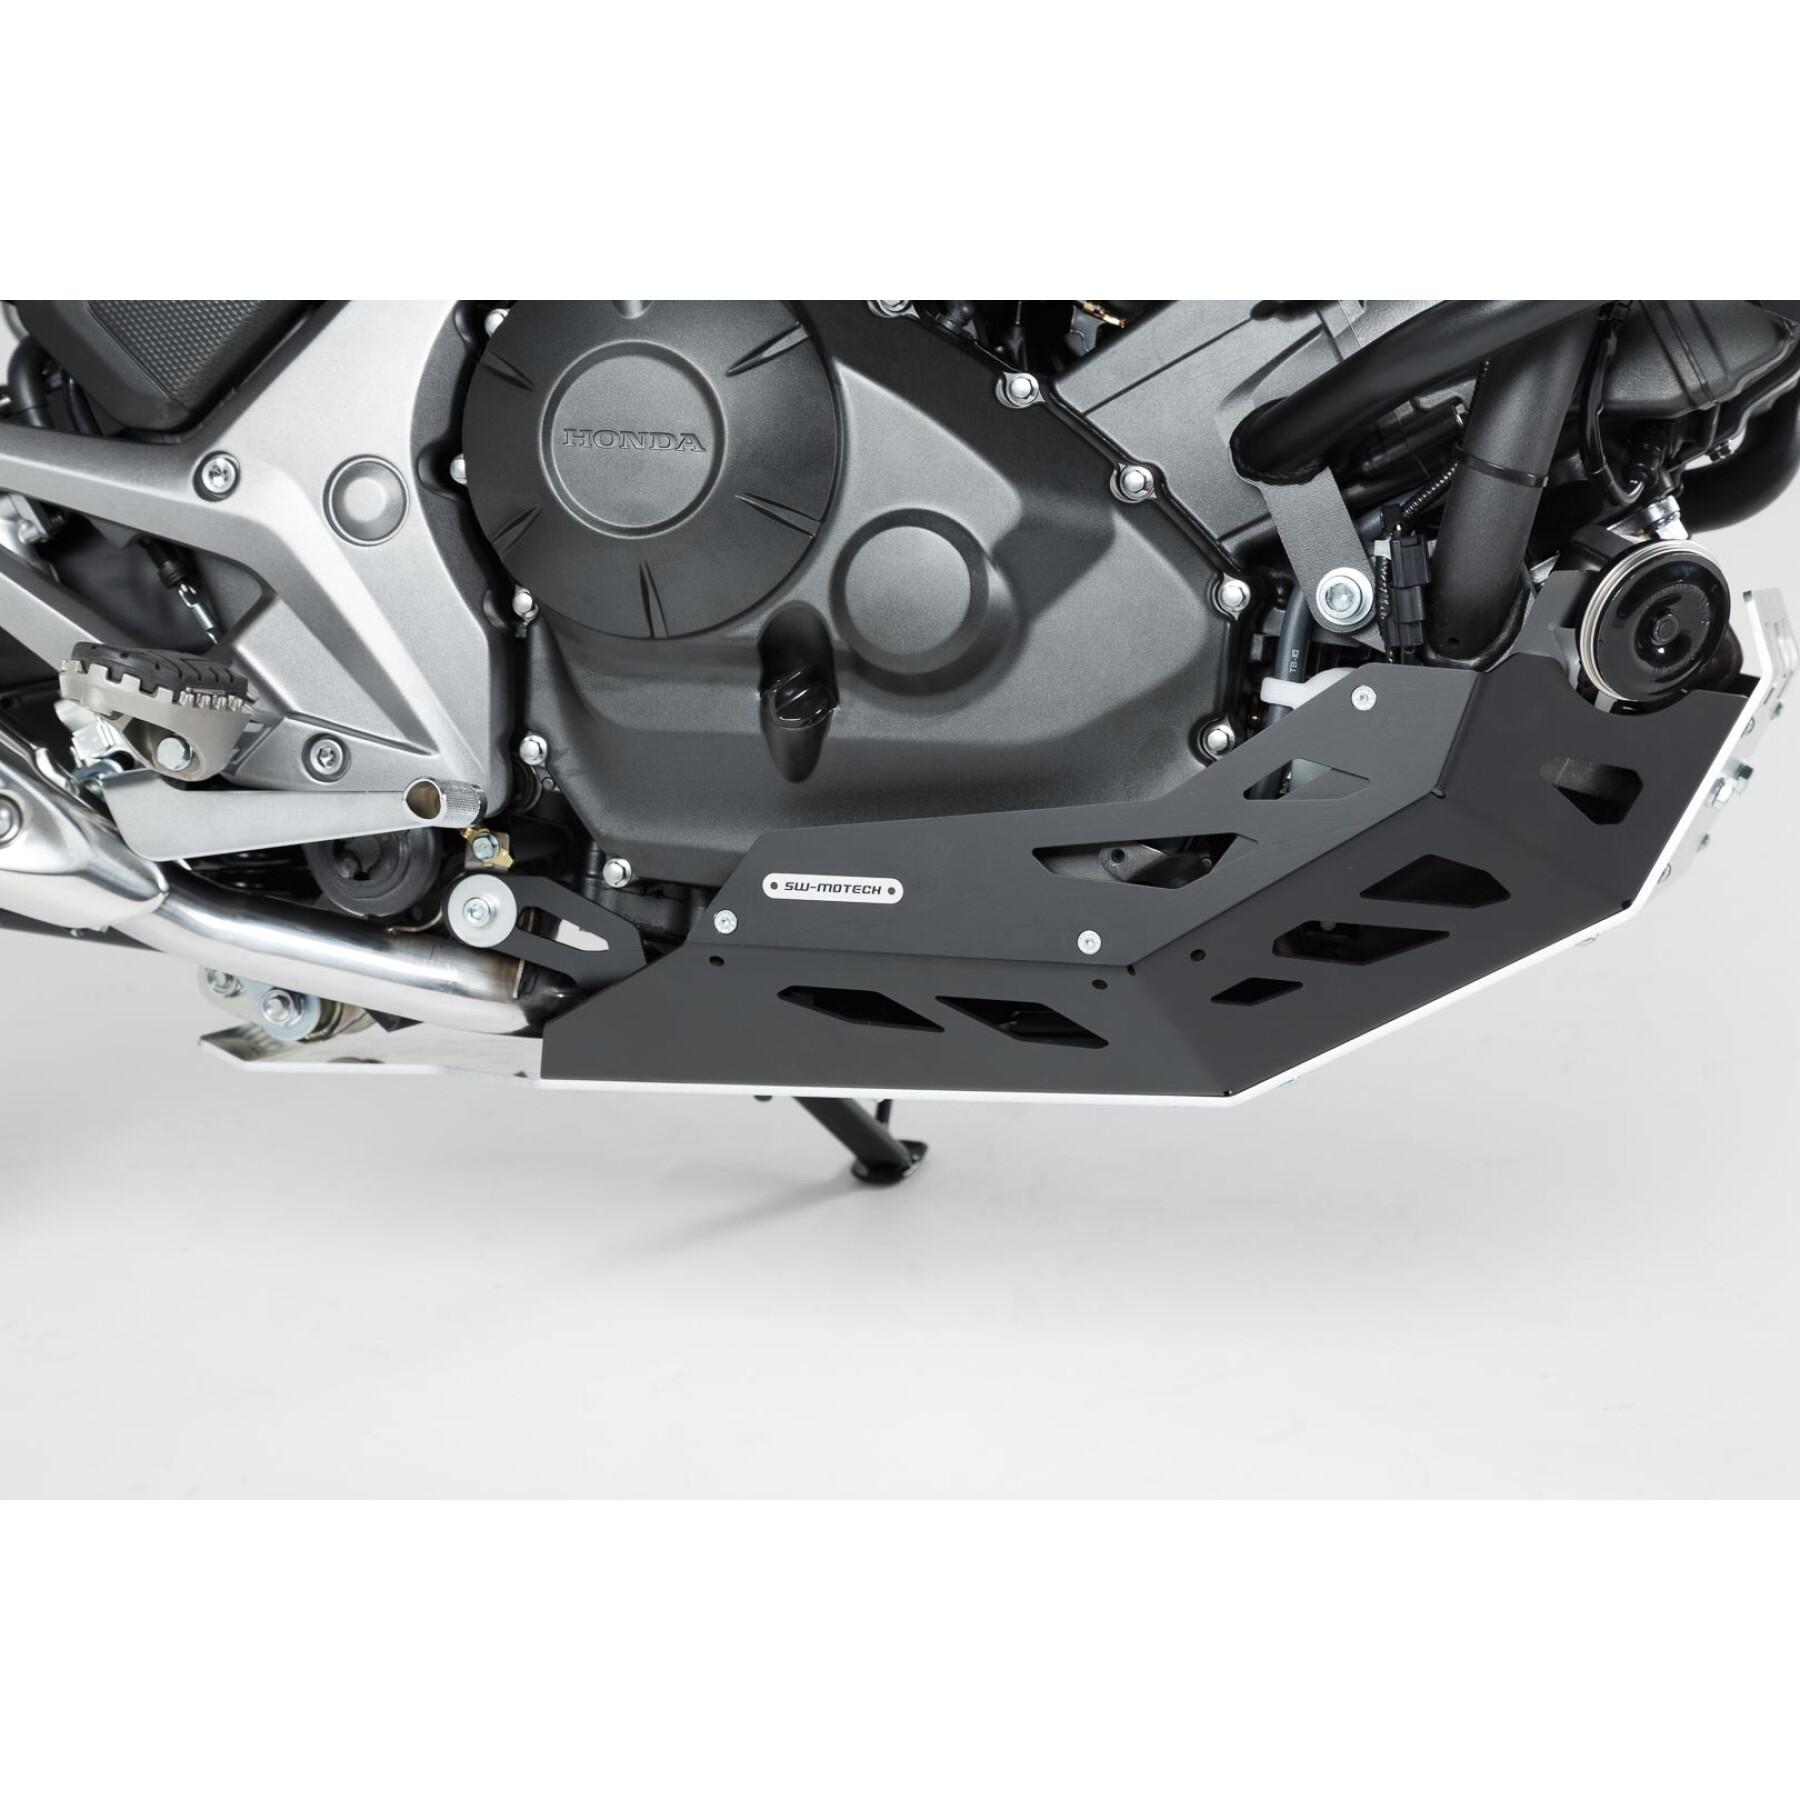 Motorradclogs Sw-Motech Sabot Moteur/Gris Honda Nc700 / Nc750 Sans Dct